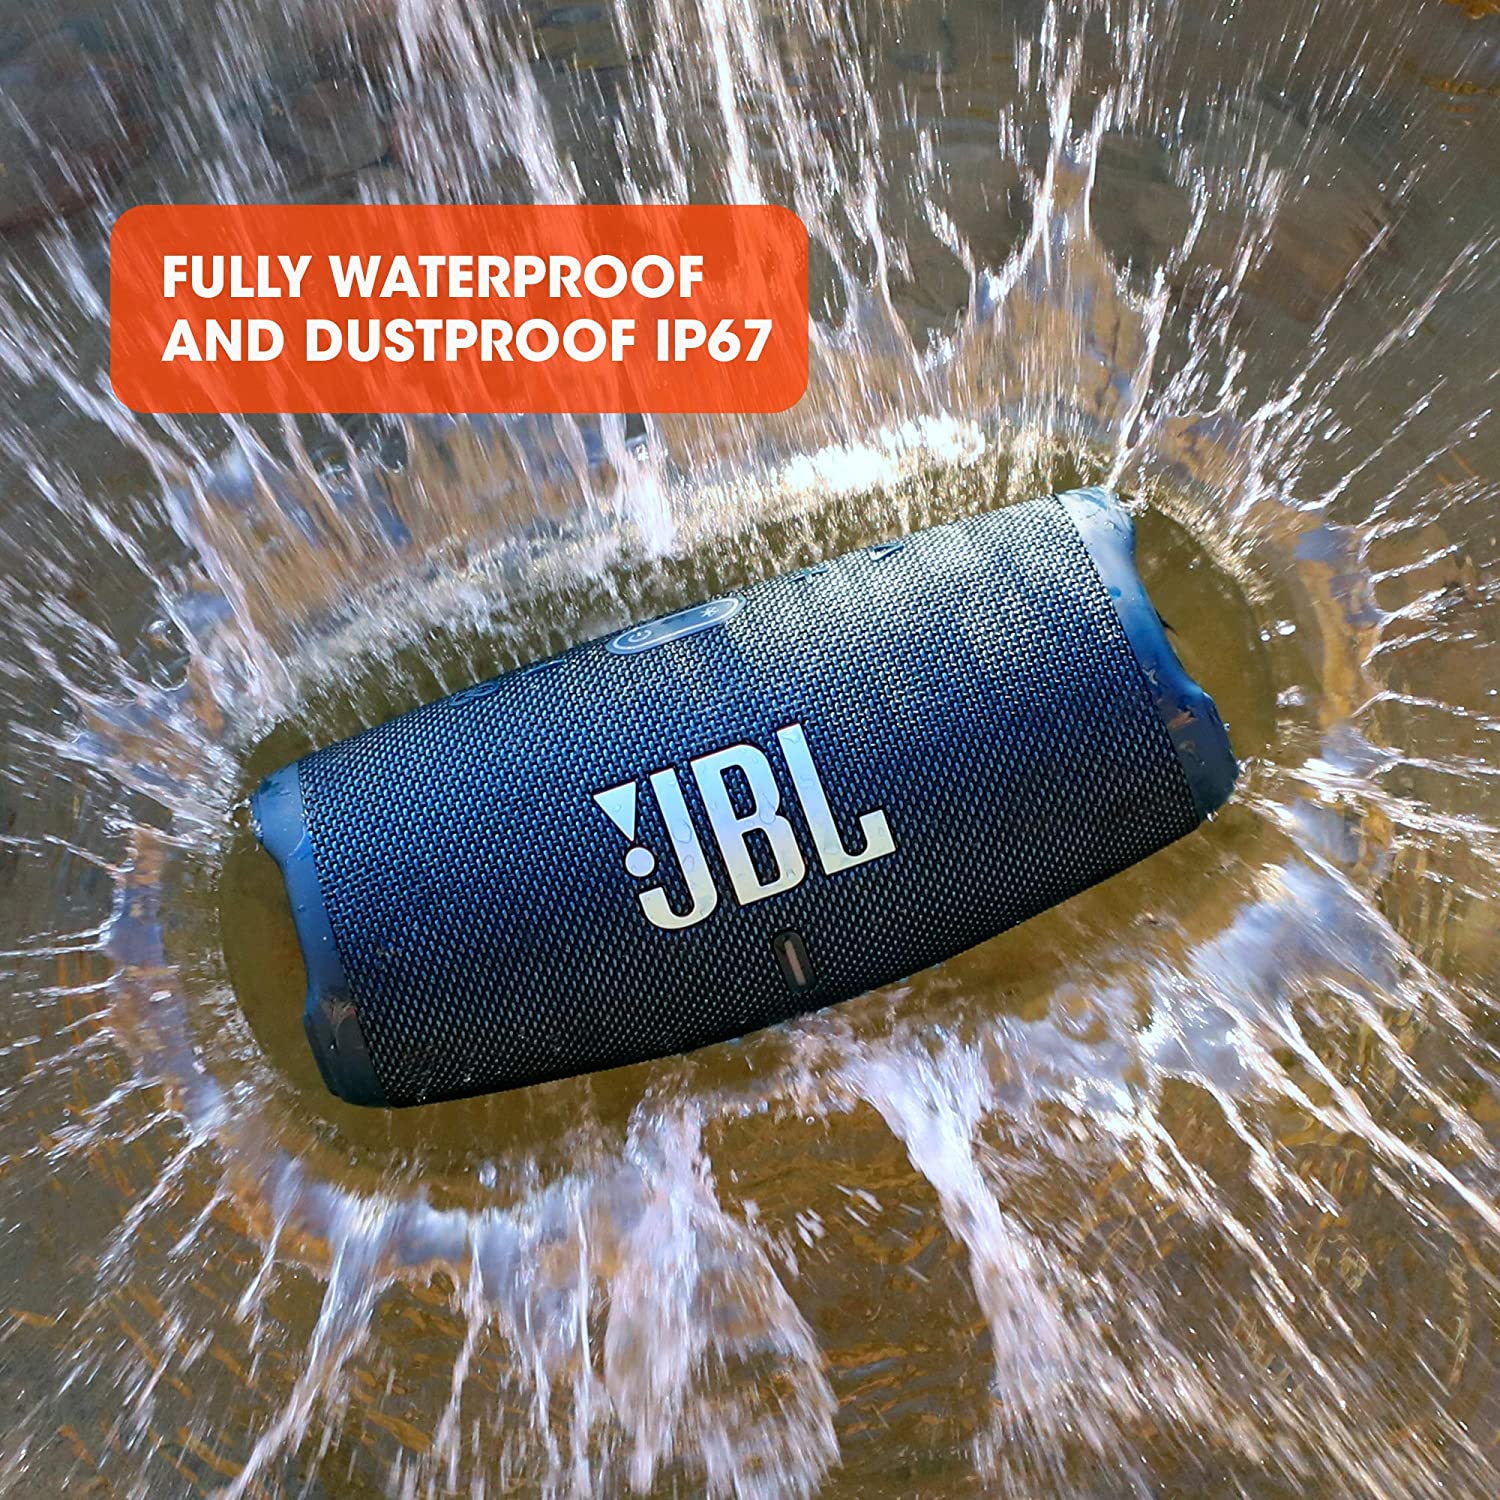 JBL CHARGE 5 - Waterproof Portable Bluetooth Speaker is fully waterproof and dustproof